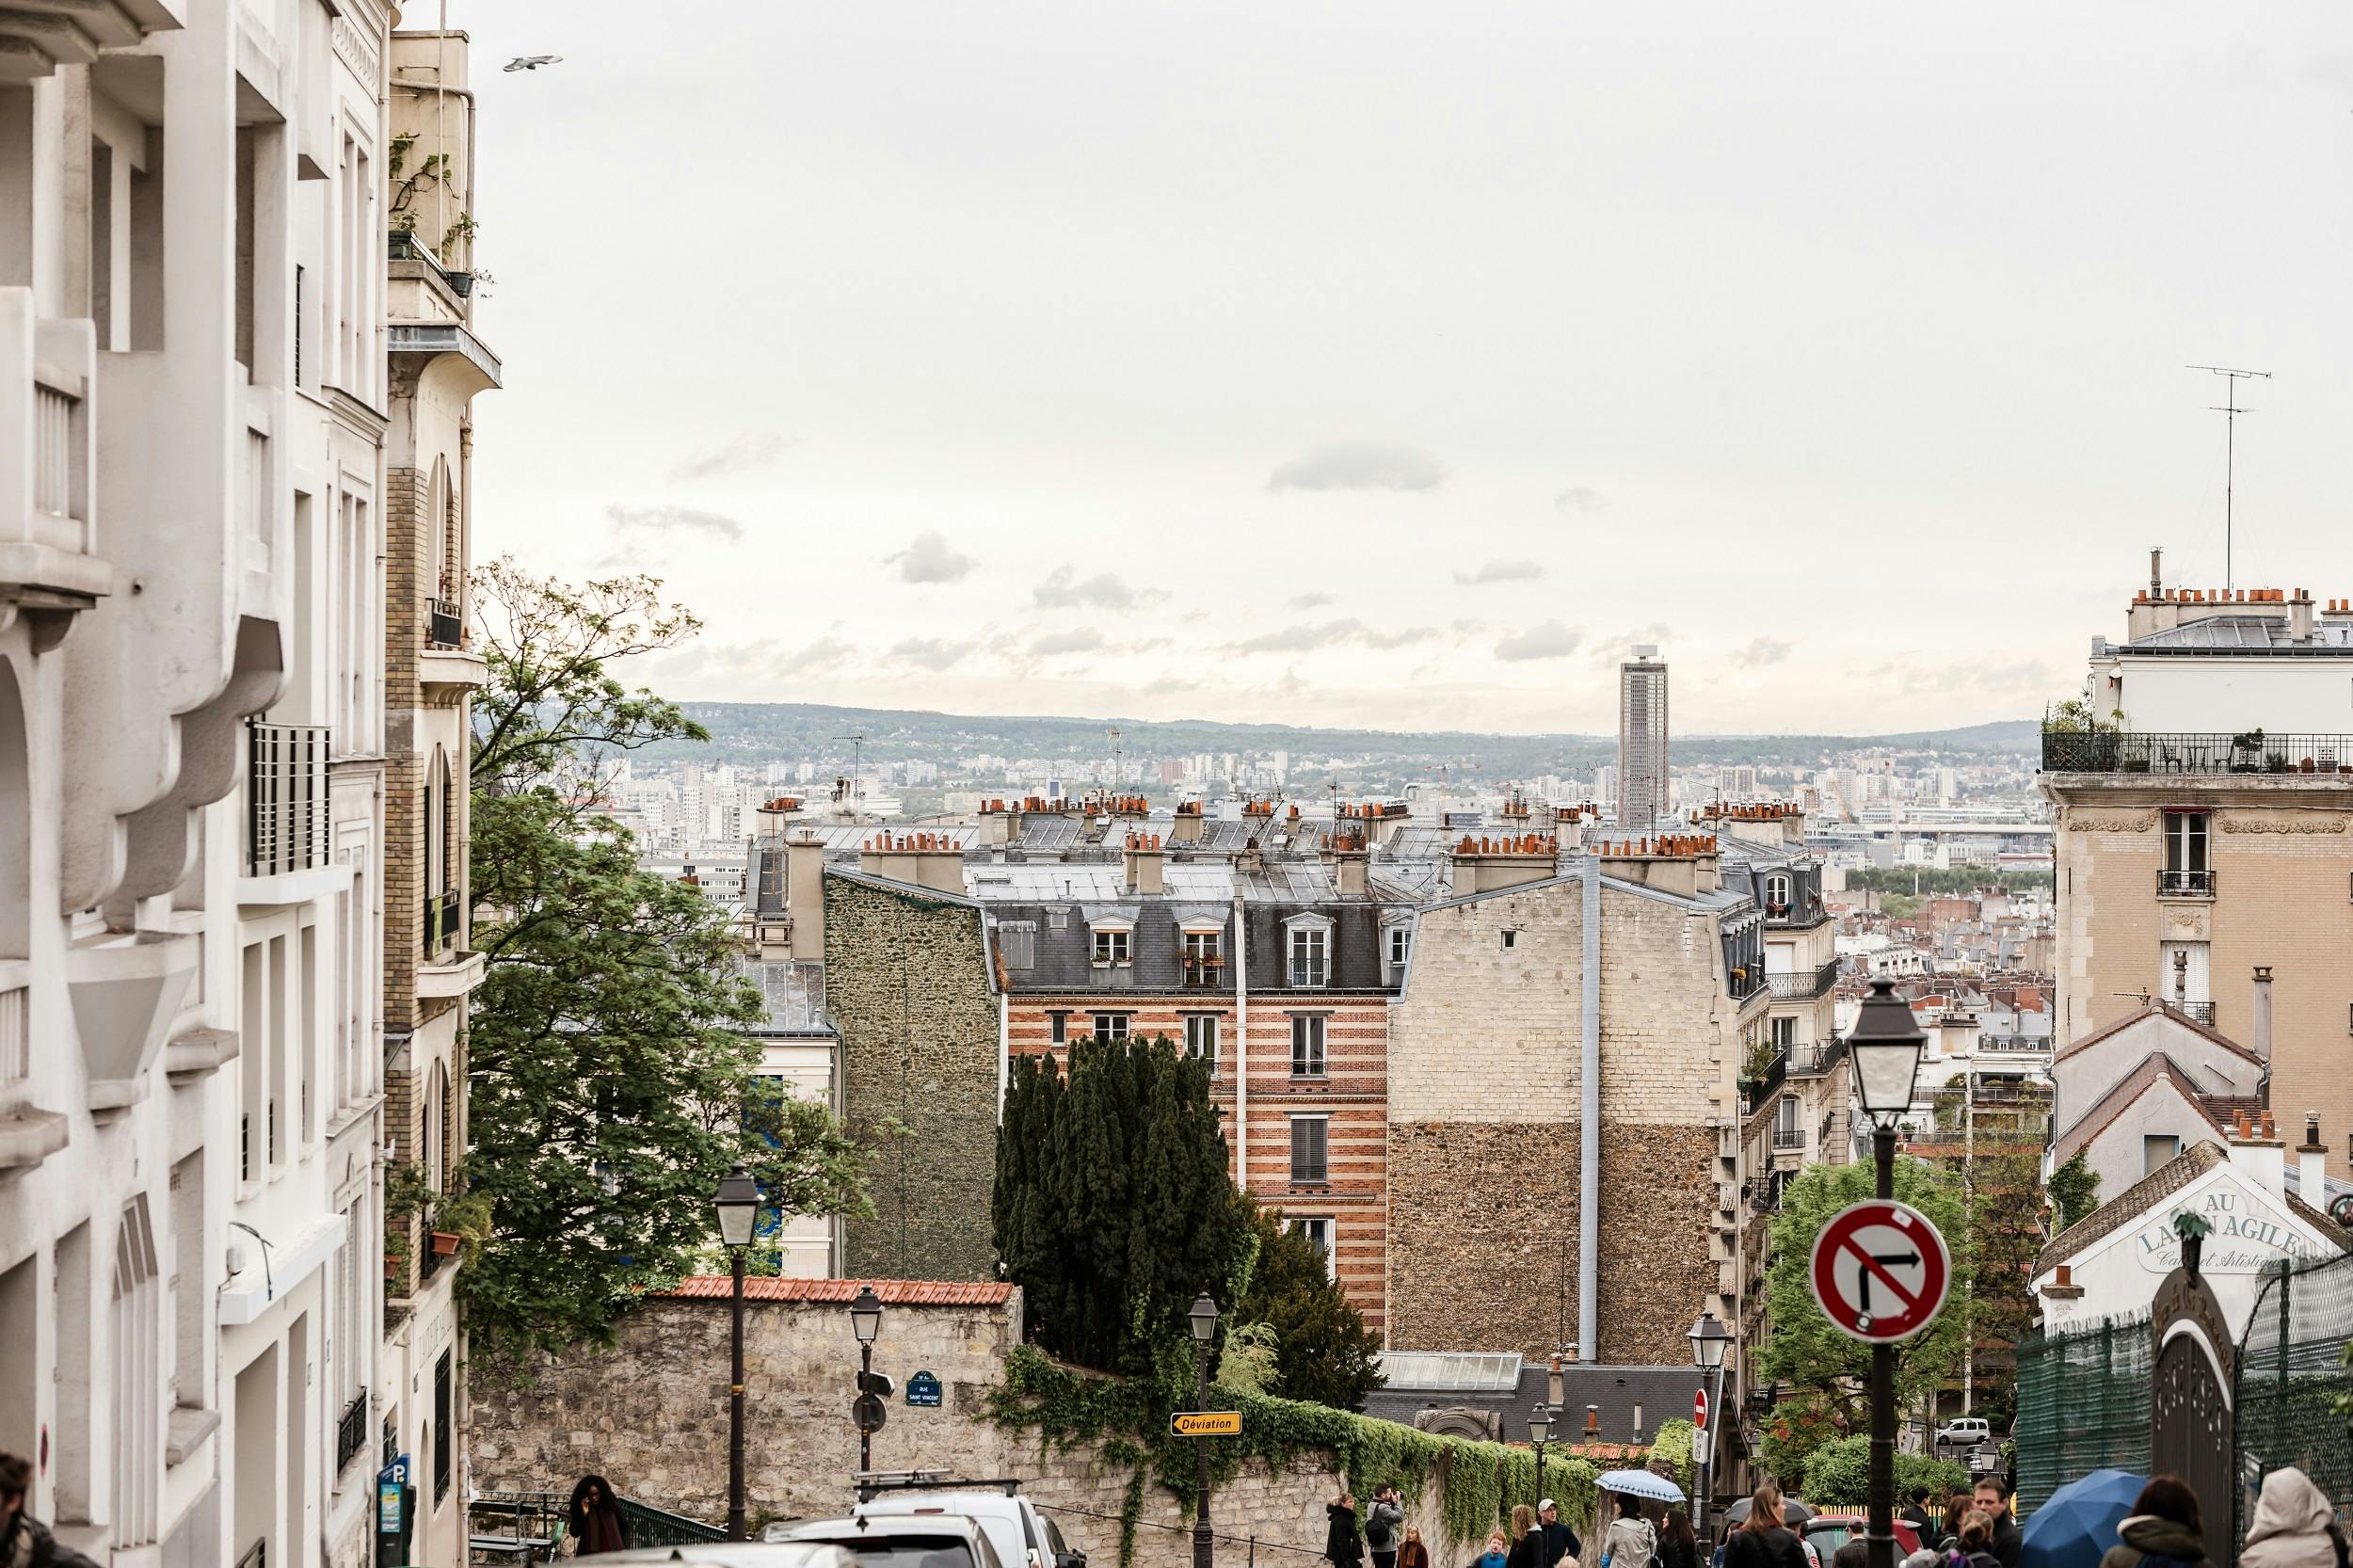 Visite privée de Paris - Explorez les quartiers éclectique de Montmartre et bohème de Clignancourt avec un guide local